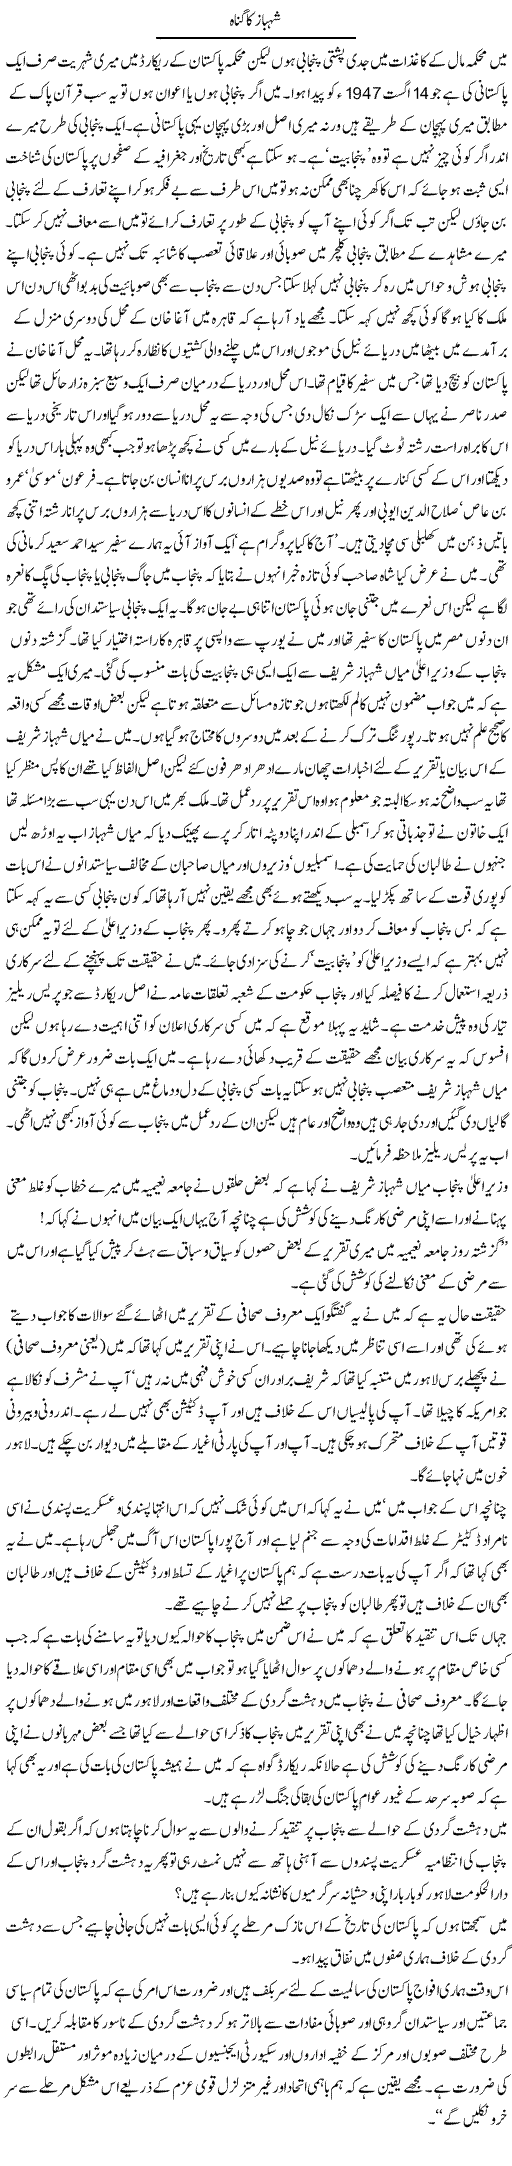 Shahbaz ka gunah Express Column Abdul Qadir Hasan 18 March 2010